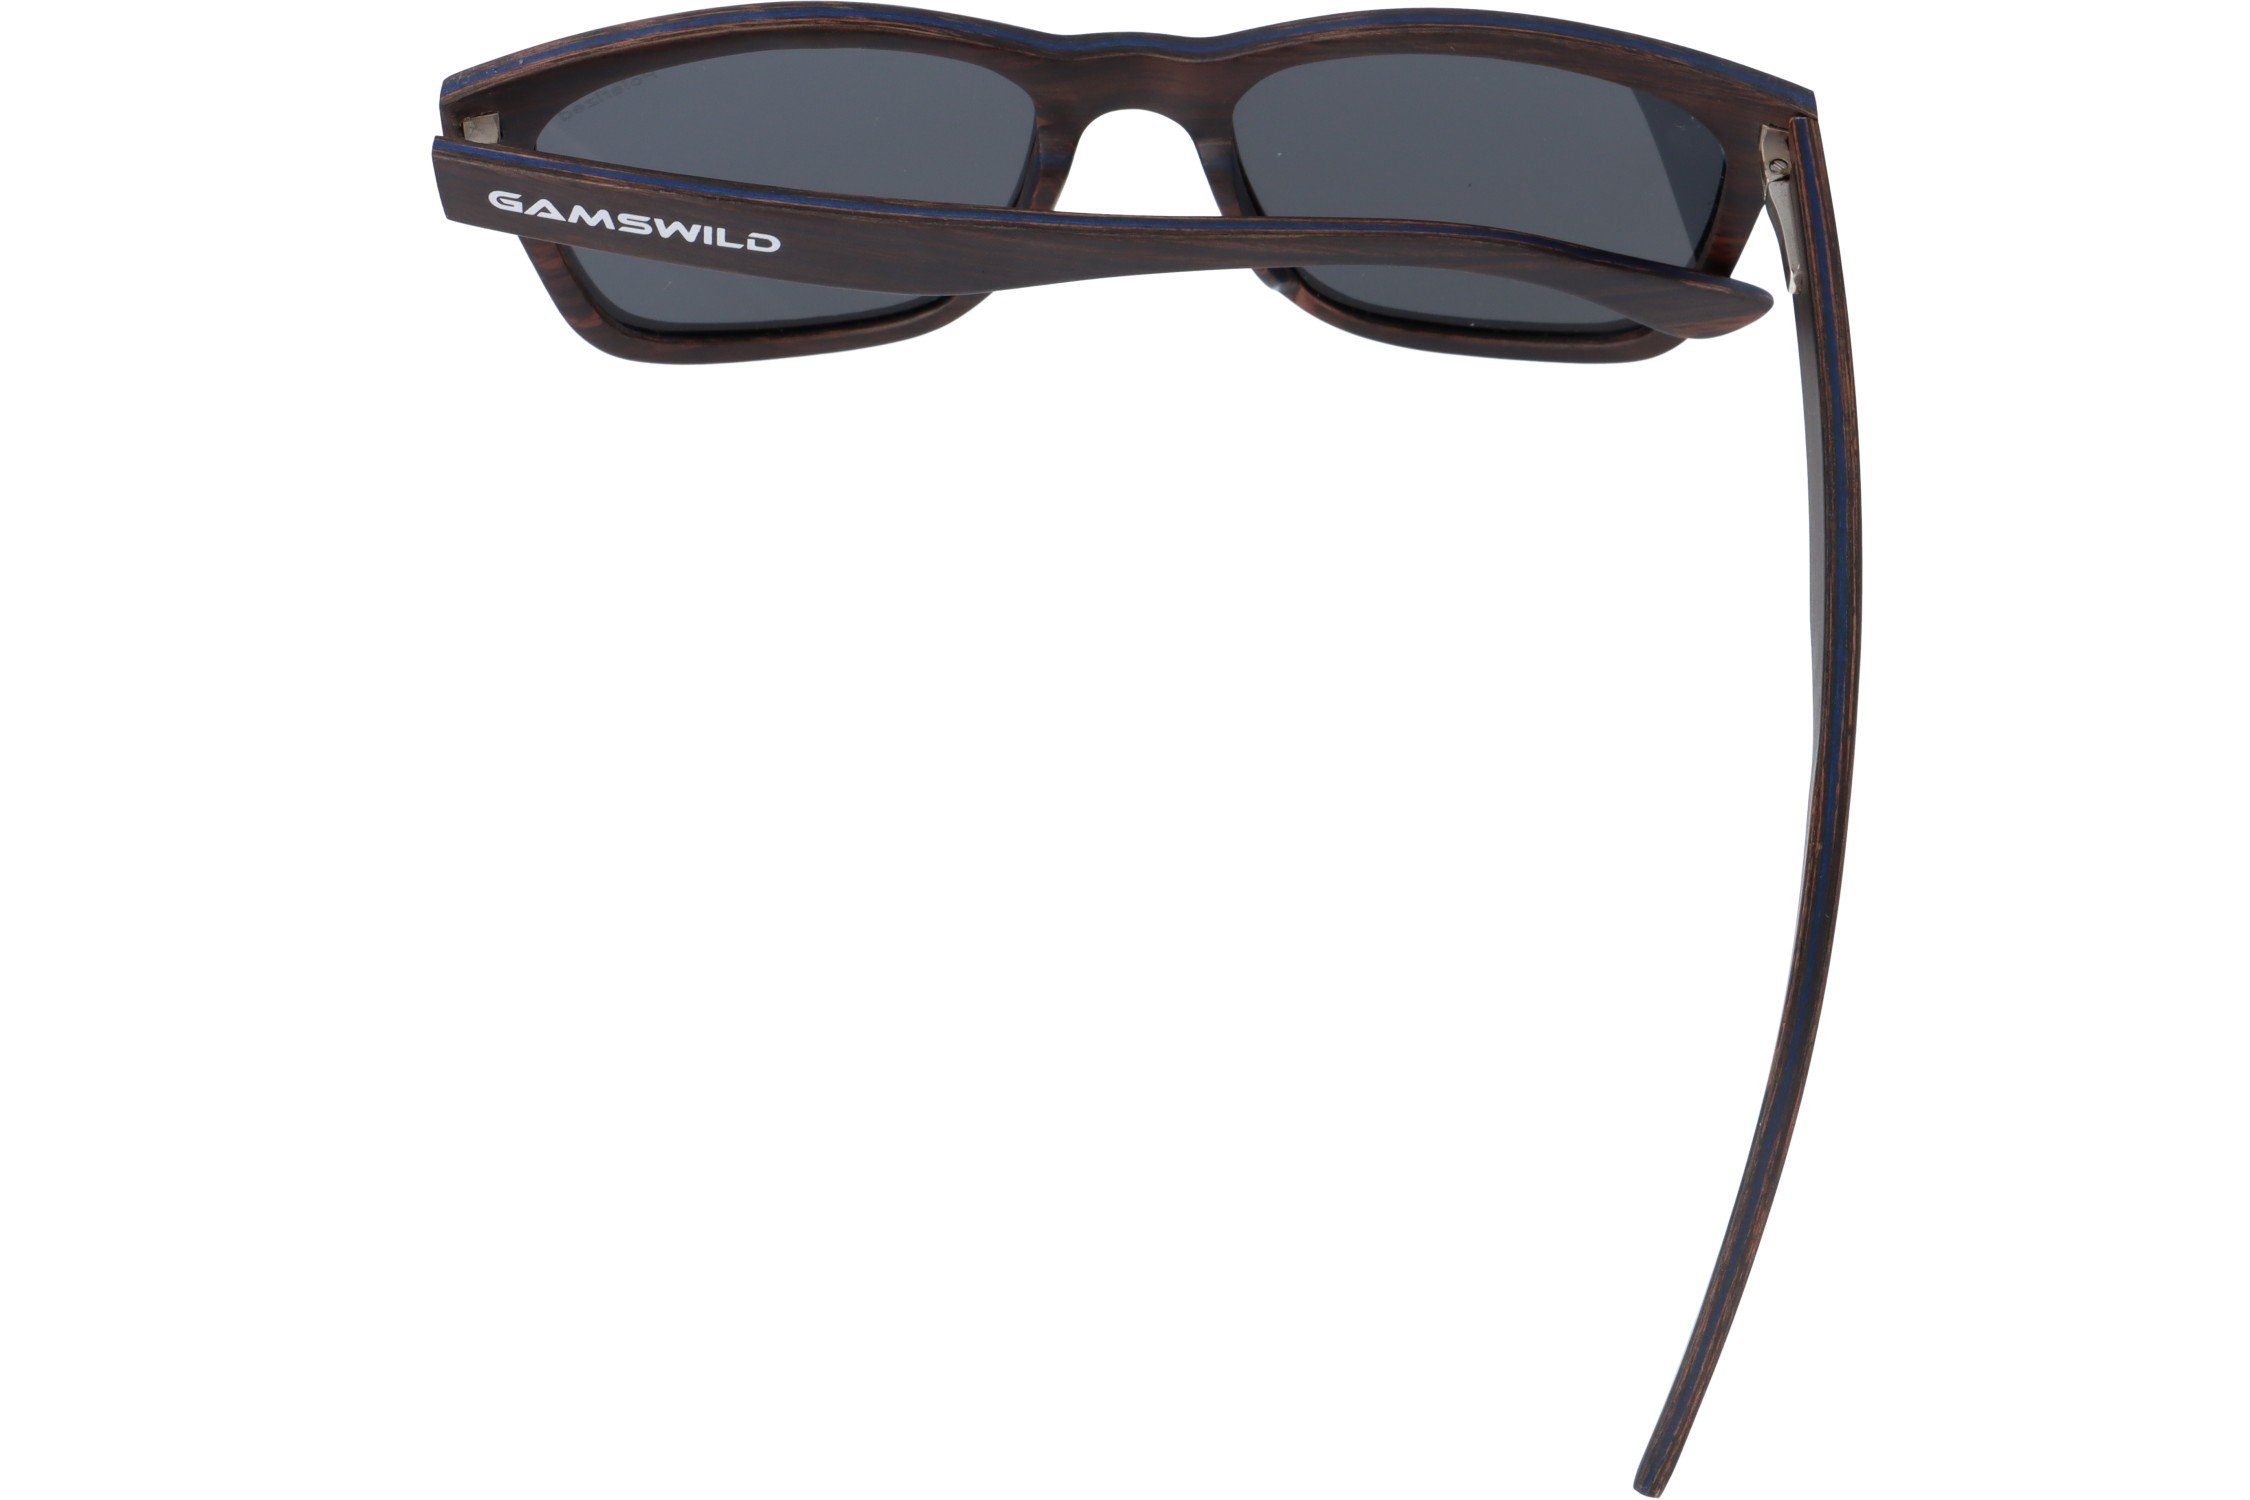 Gamswild Sonnenbrille WM0011 Holzbrille polarisierte GAMSSTYLE Glas grau, Unisex, & Gläser braun, grau blau G15 Damen Herren in